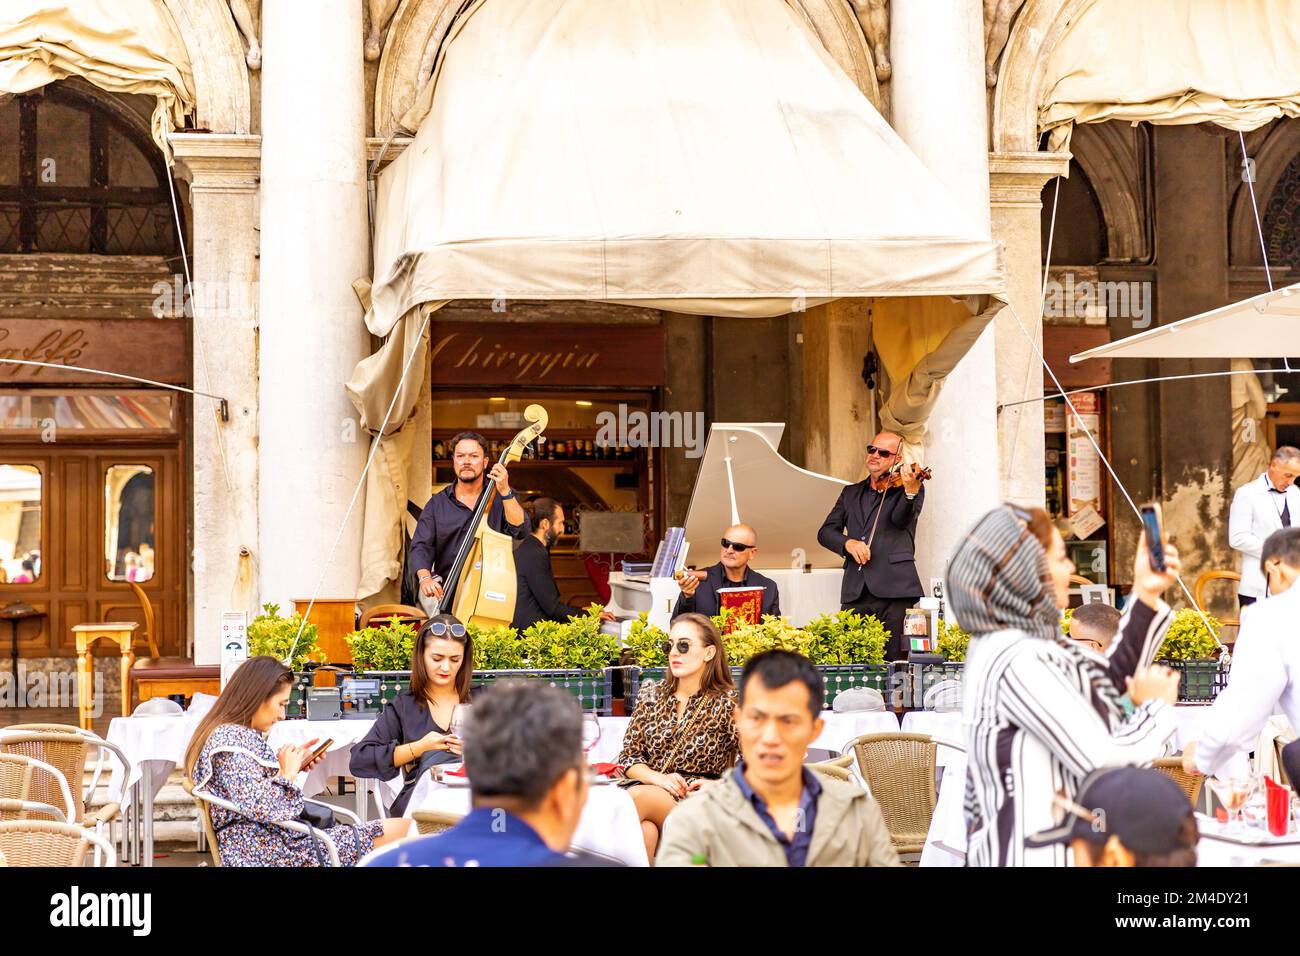 Musica dal vivo al Gran caffe Chioggia in Piazza San Marco a Venezia. Musicisti nella caffetteria di San Marco. I turisti hanno caffè, aperol, fare foto. Foto Stock